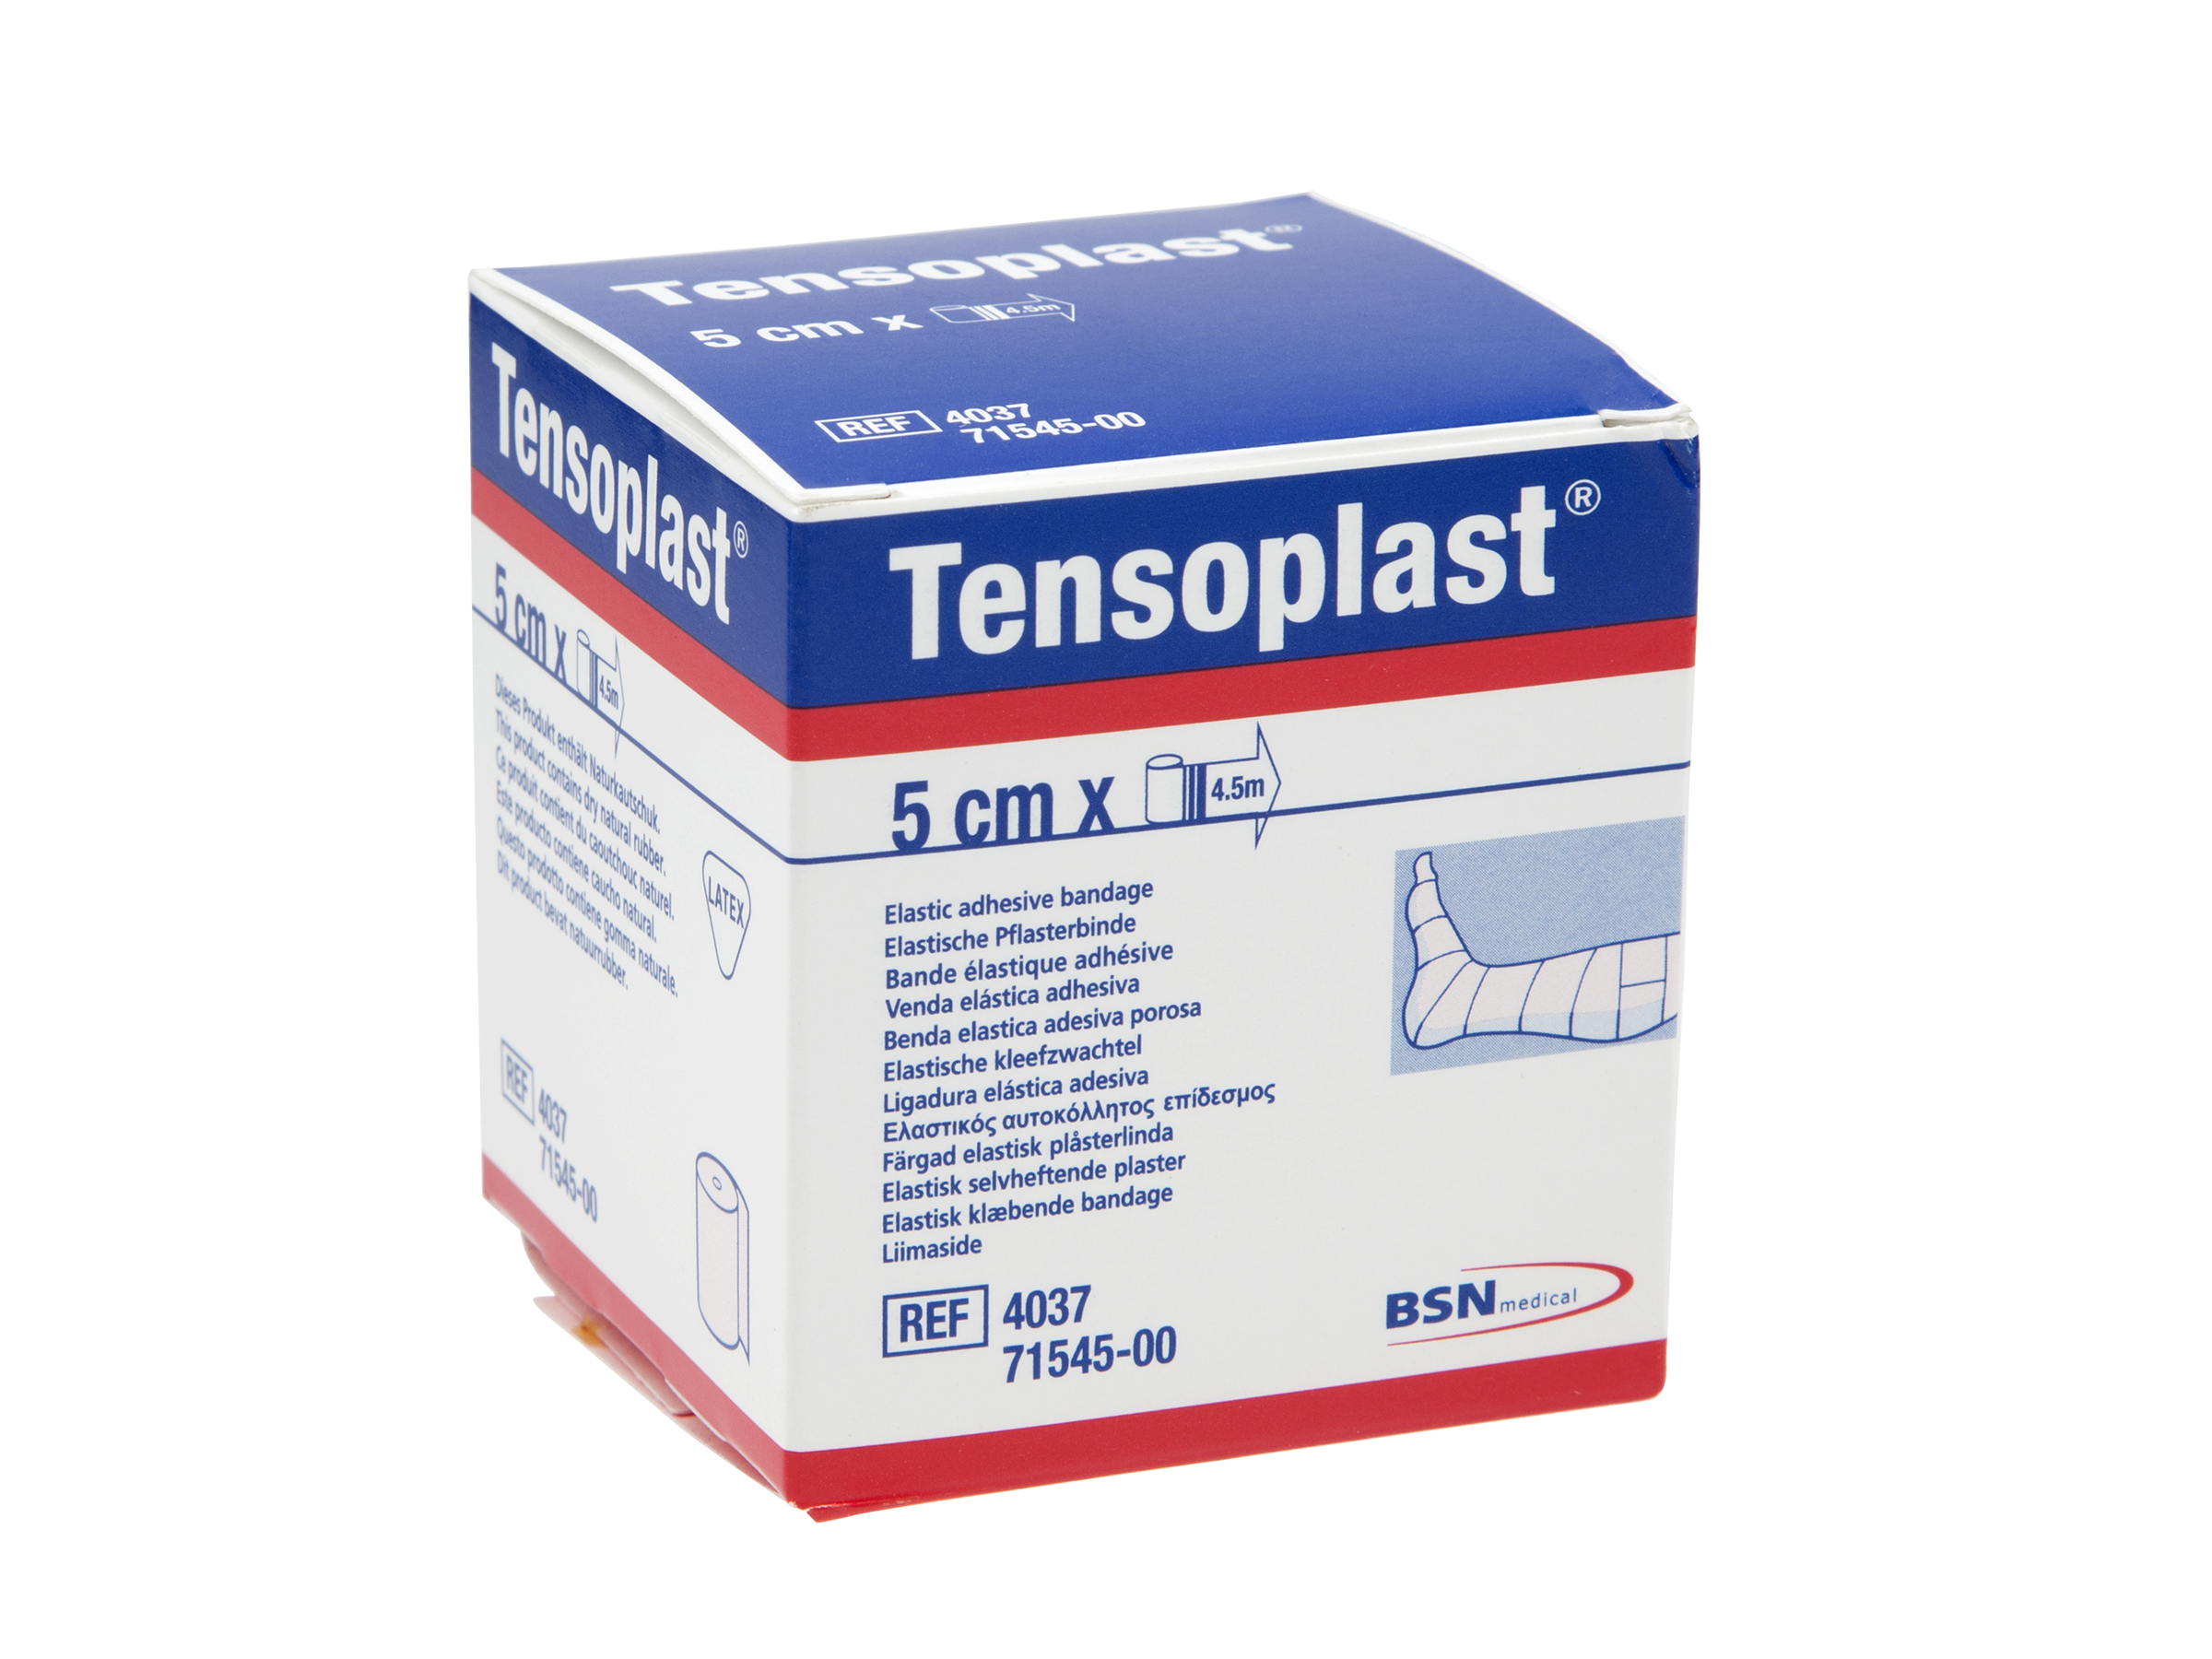 Tensoplast 5,0 cm x 4,5 m, 1 stk